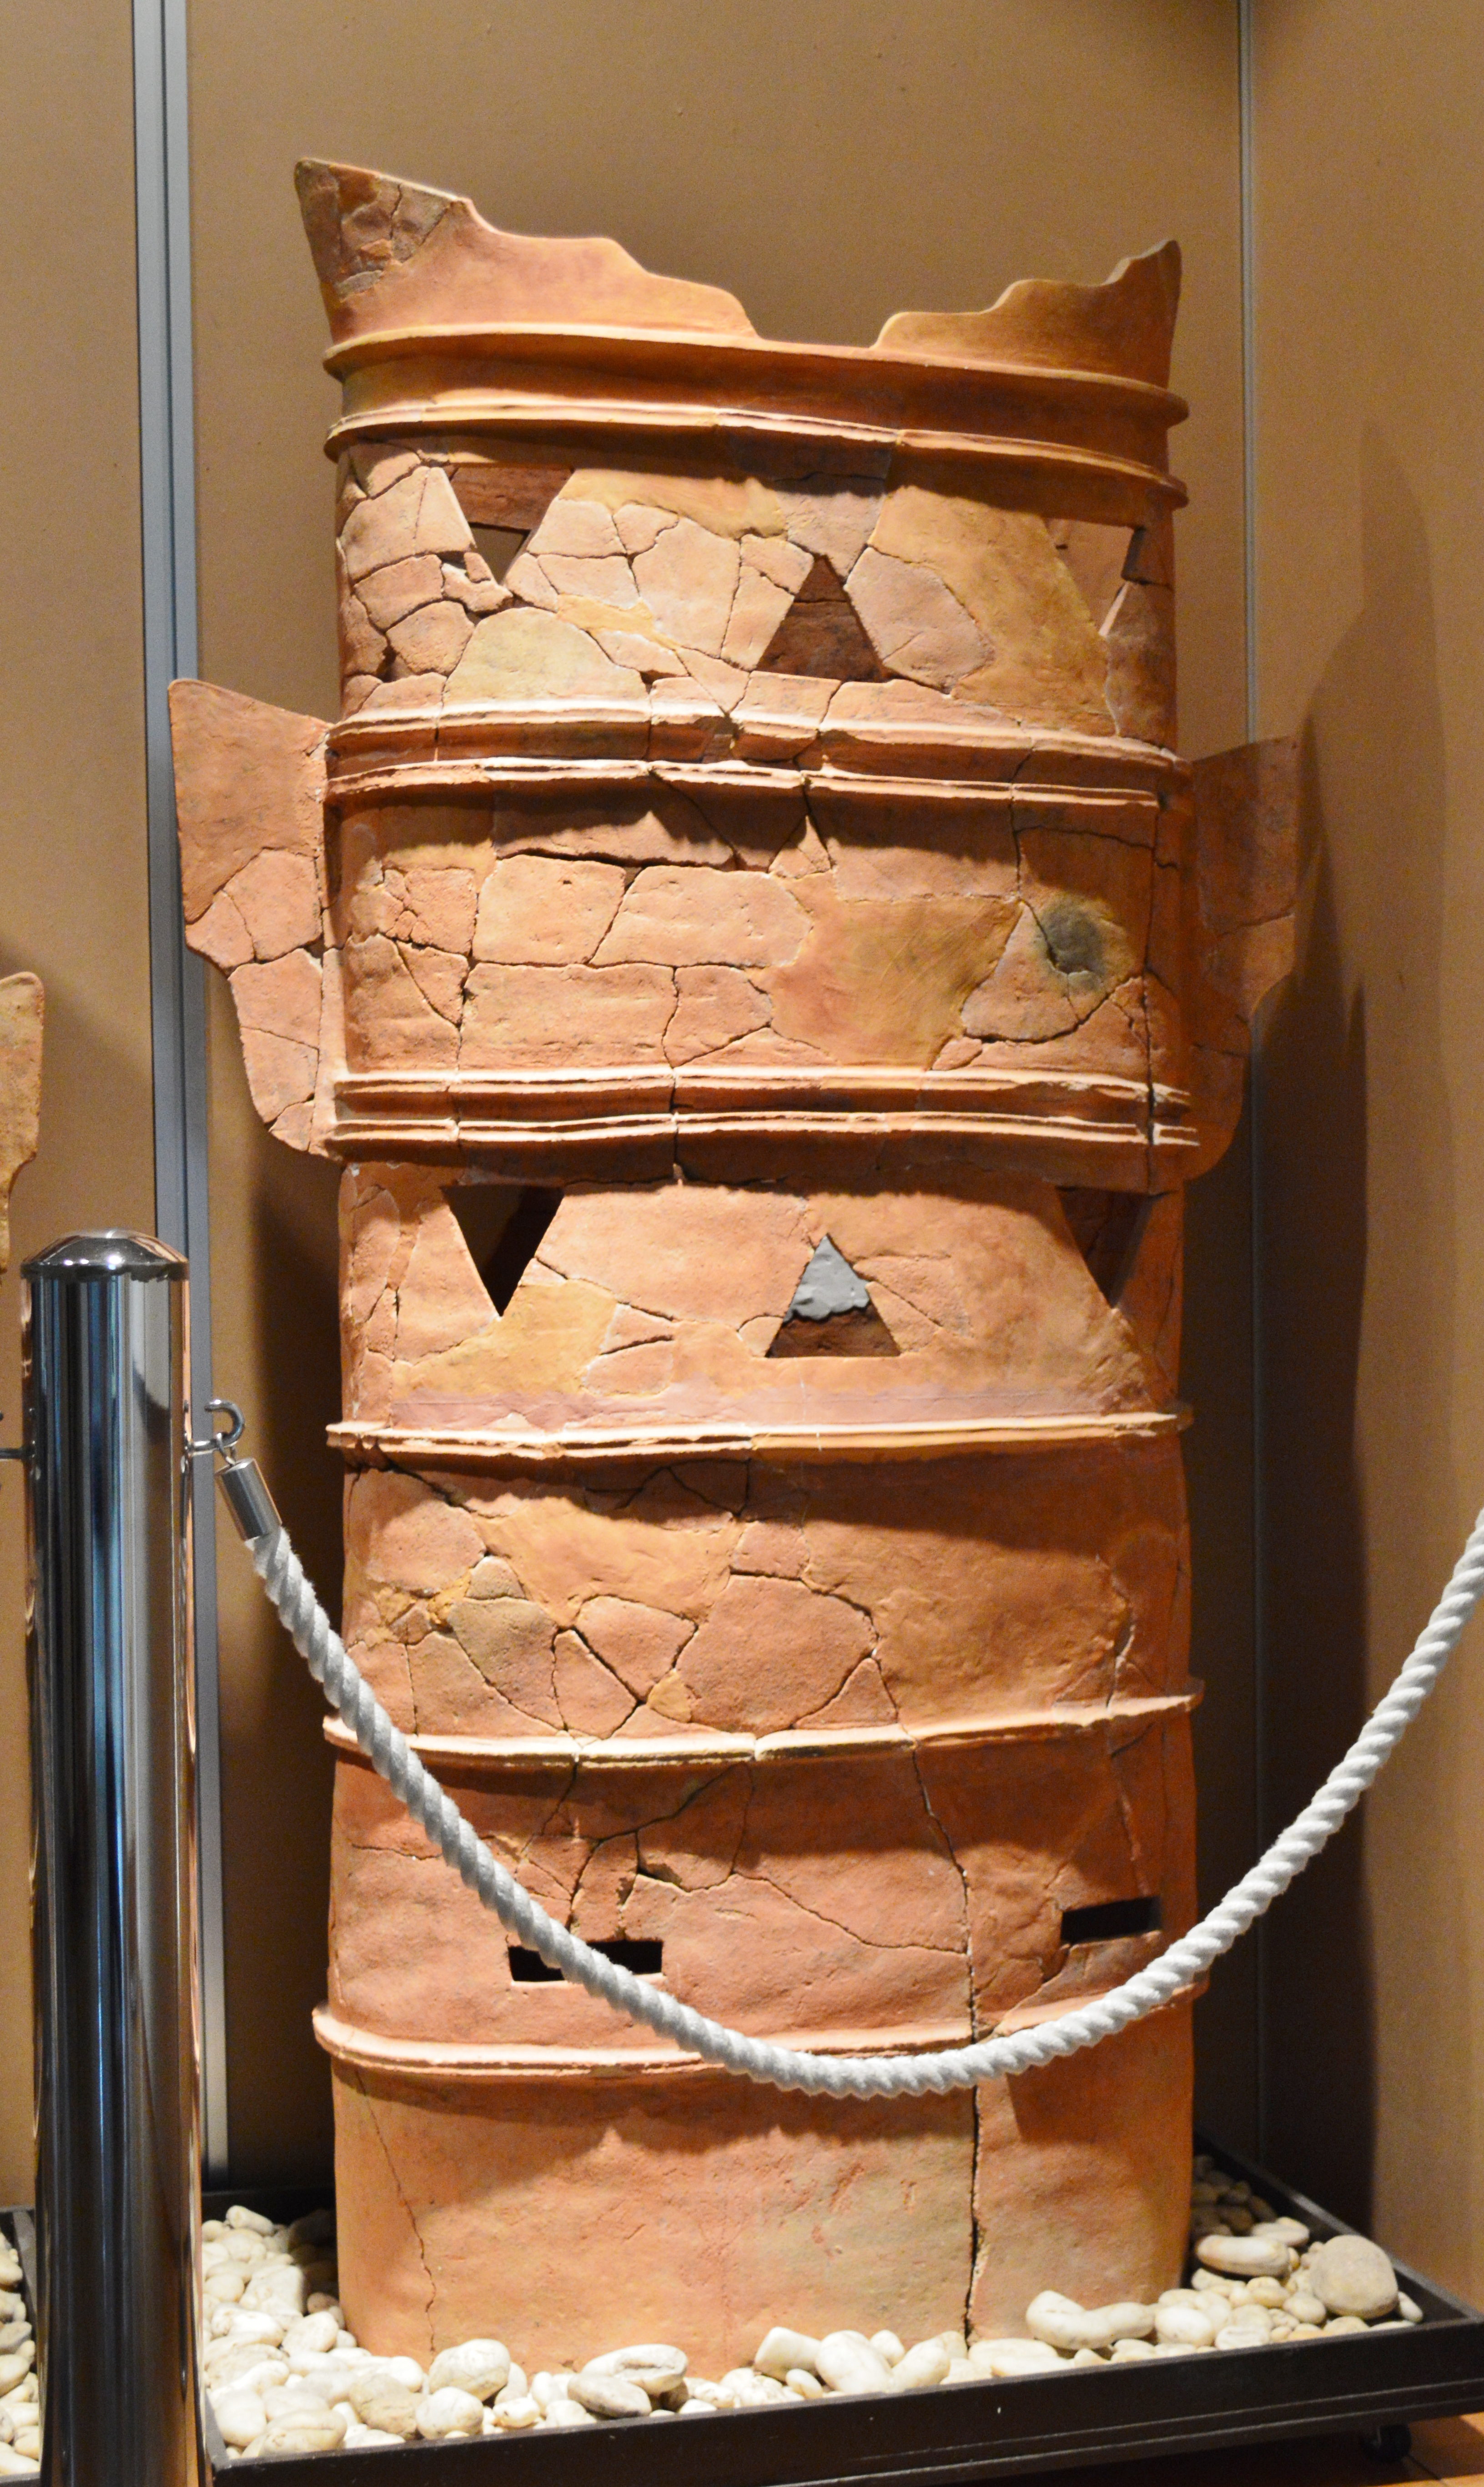 File:松岳山古墳出土 鰭付楕円形円筒埴輪-1.JPG - Wikimedia Commons